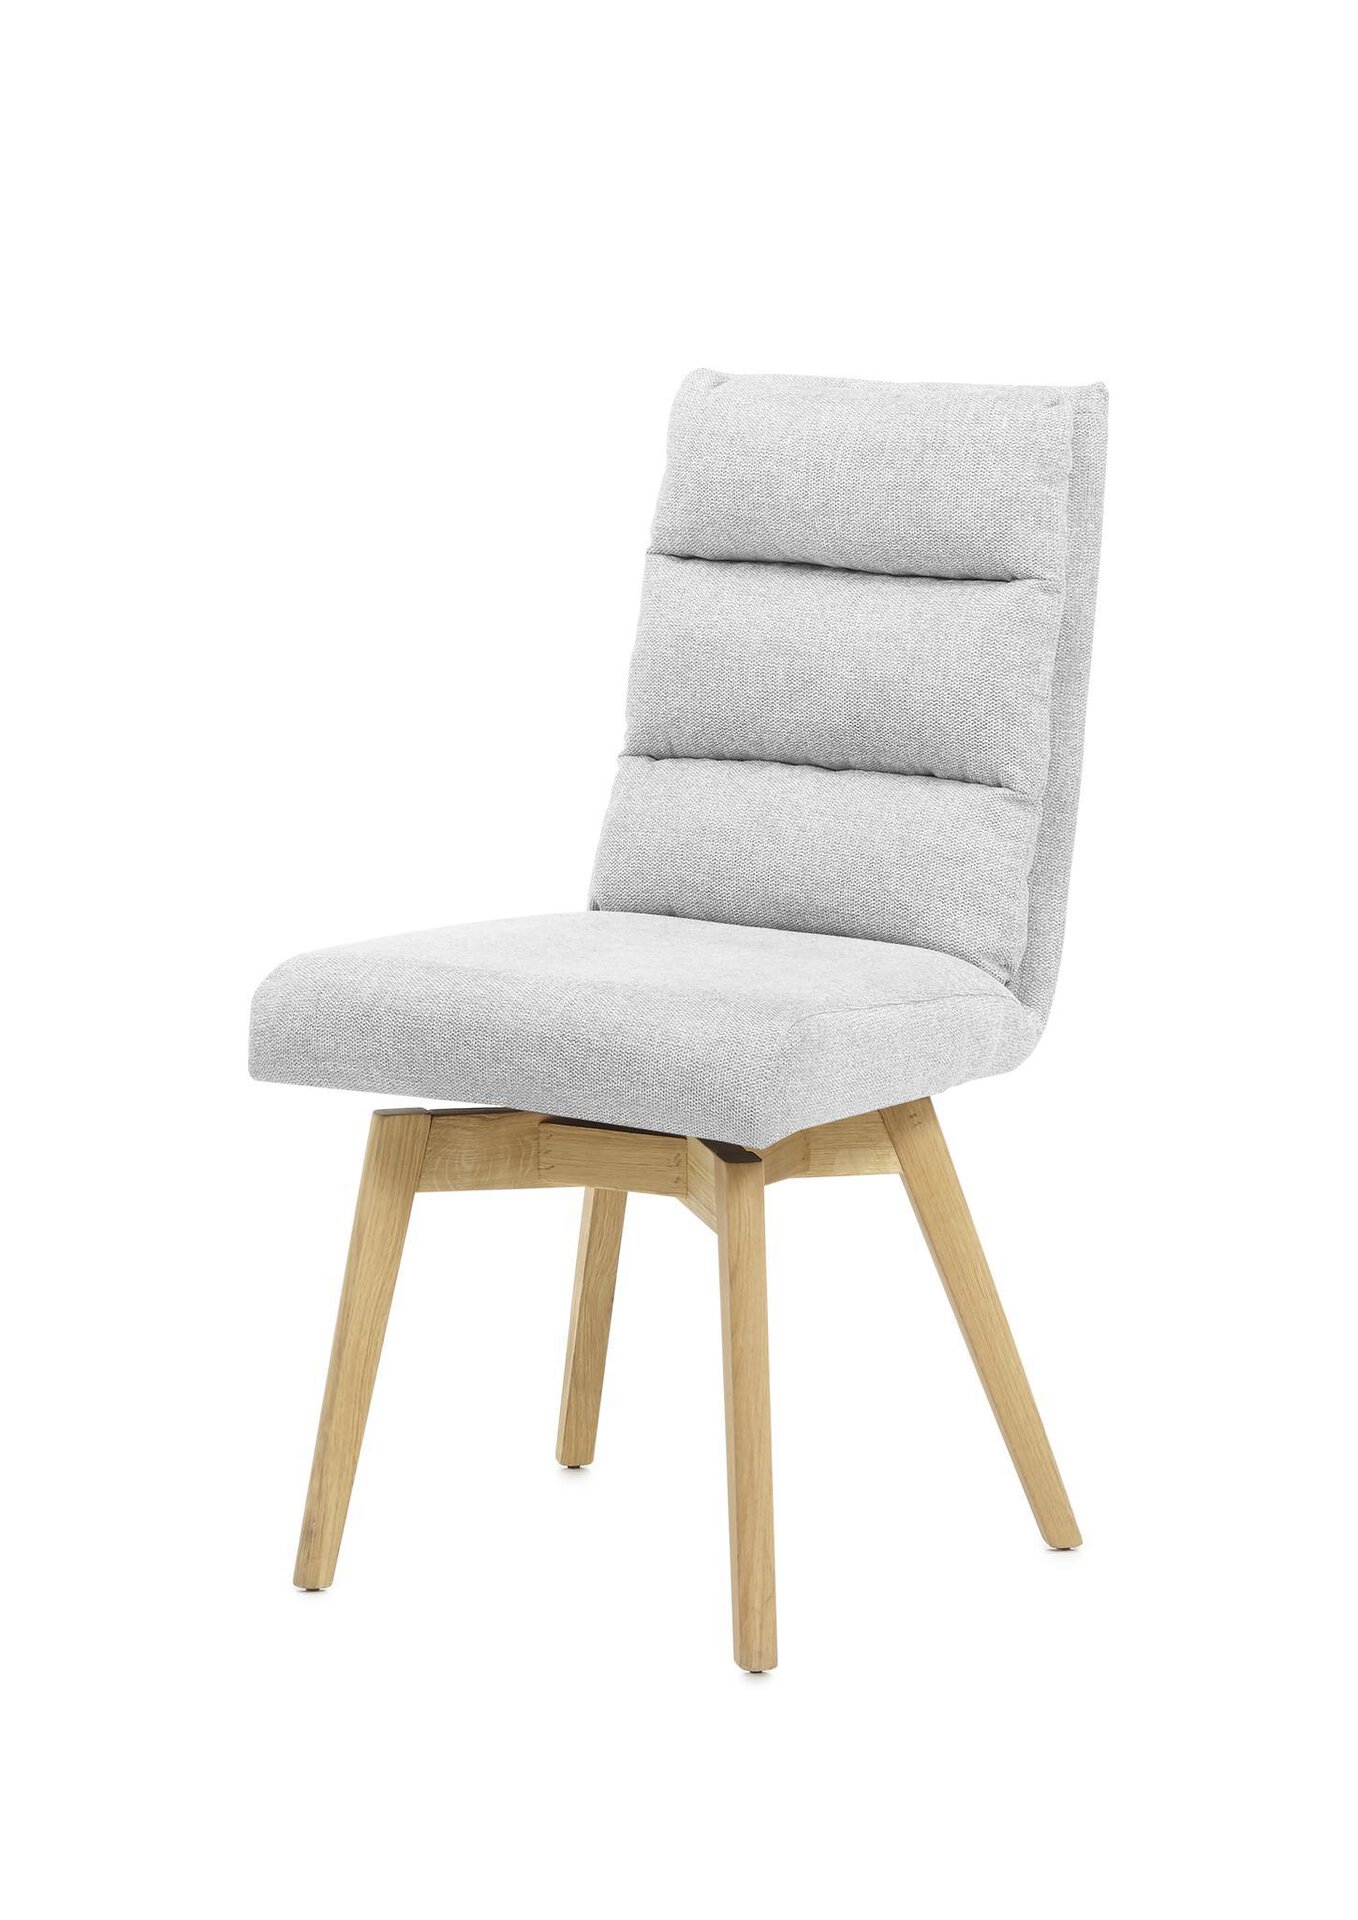 Stuhl Holz furniture MCA Inhofer | Möbel